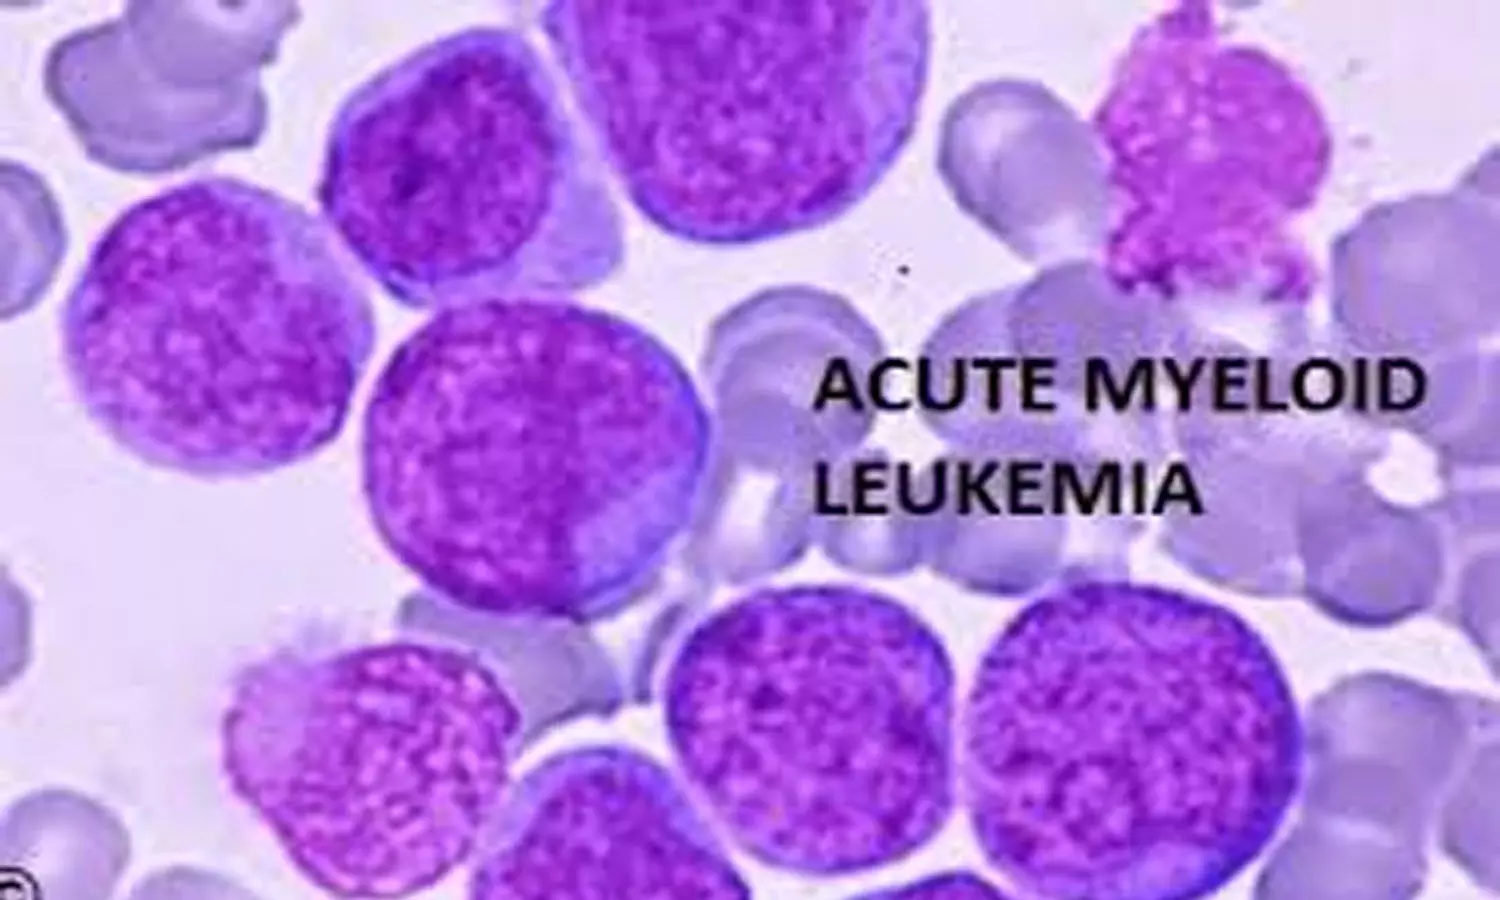 PARP inhibitors increase risk of myelodysplastic syndrome and acute myeloid leukaemia: Lancet study